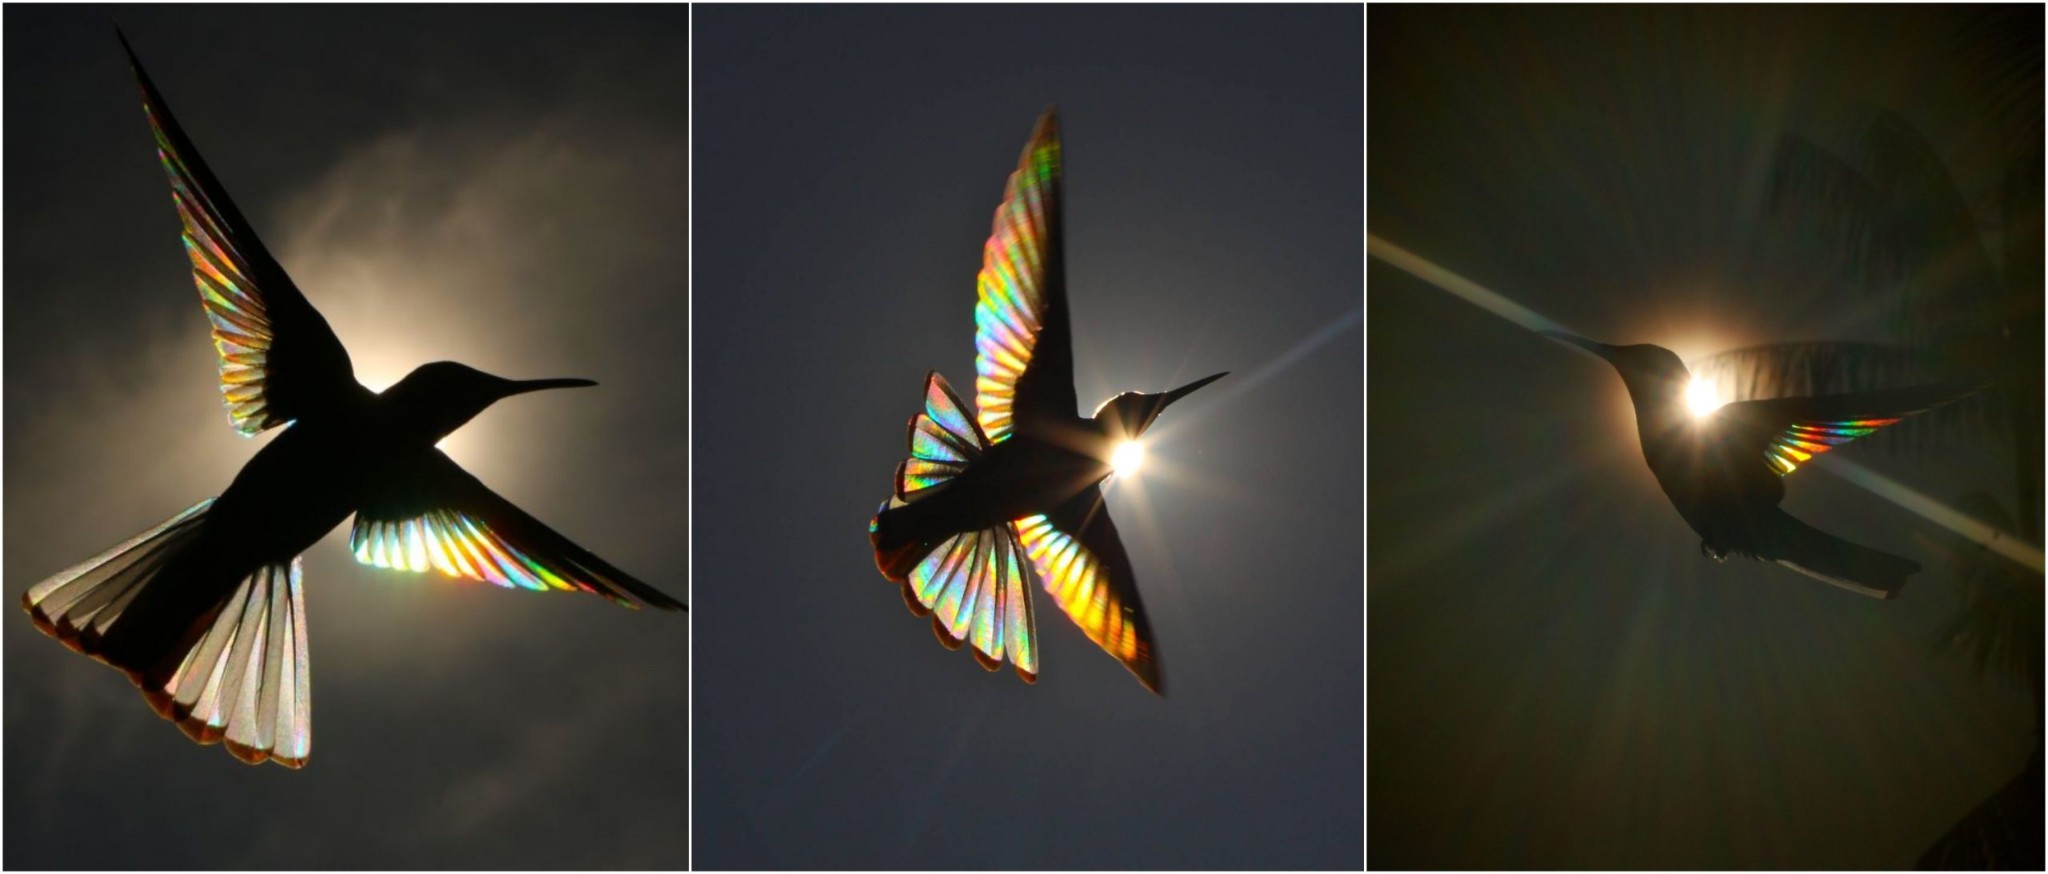 Những ánh cầu vồng lấp lánh dưới đôi cánh của chim ruồi được NAG người Úc ghi lại